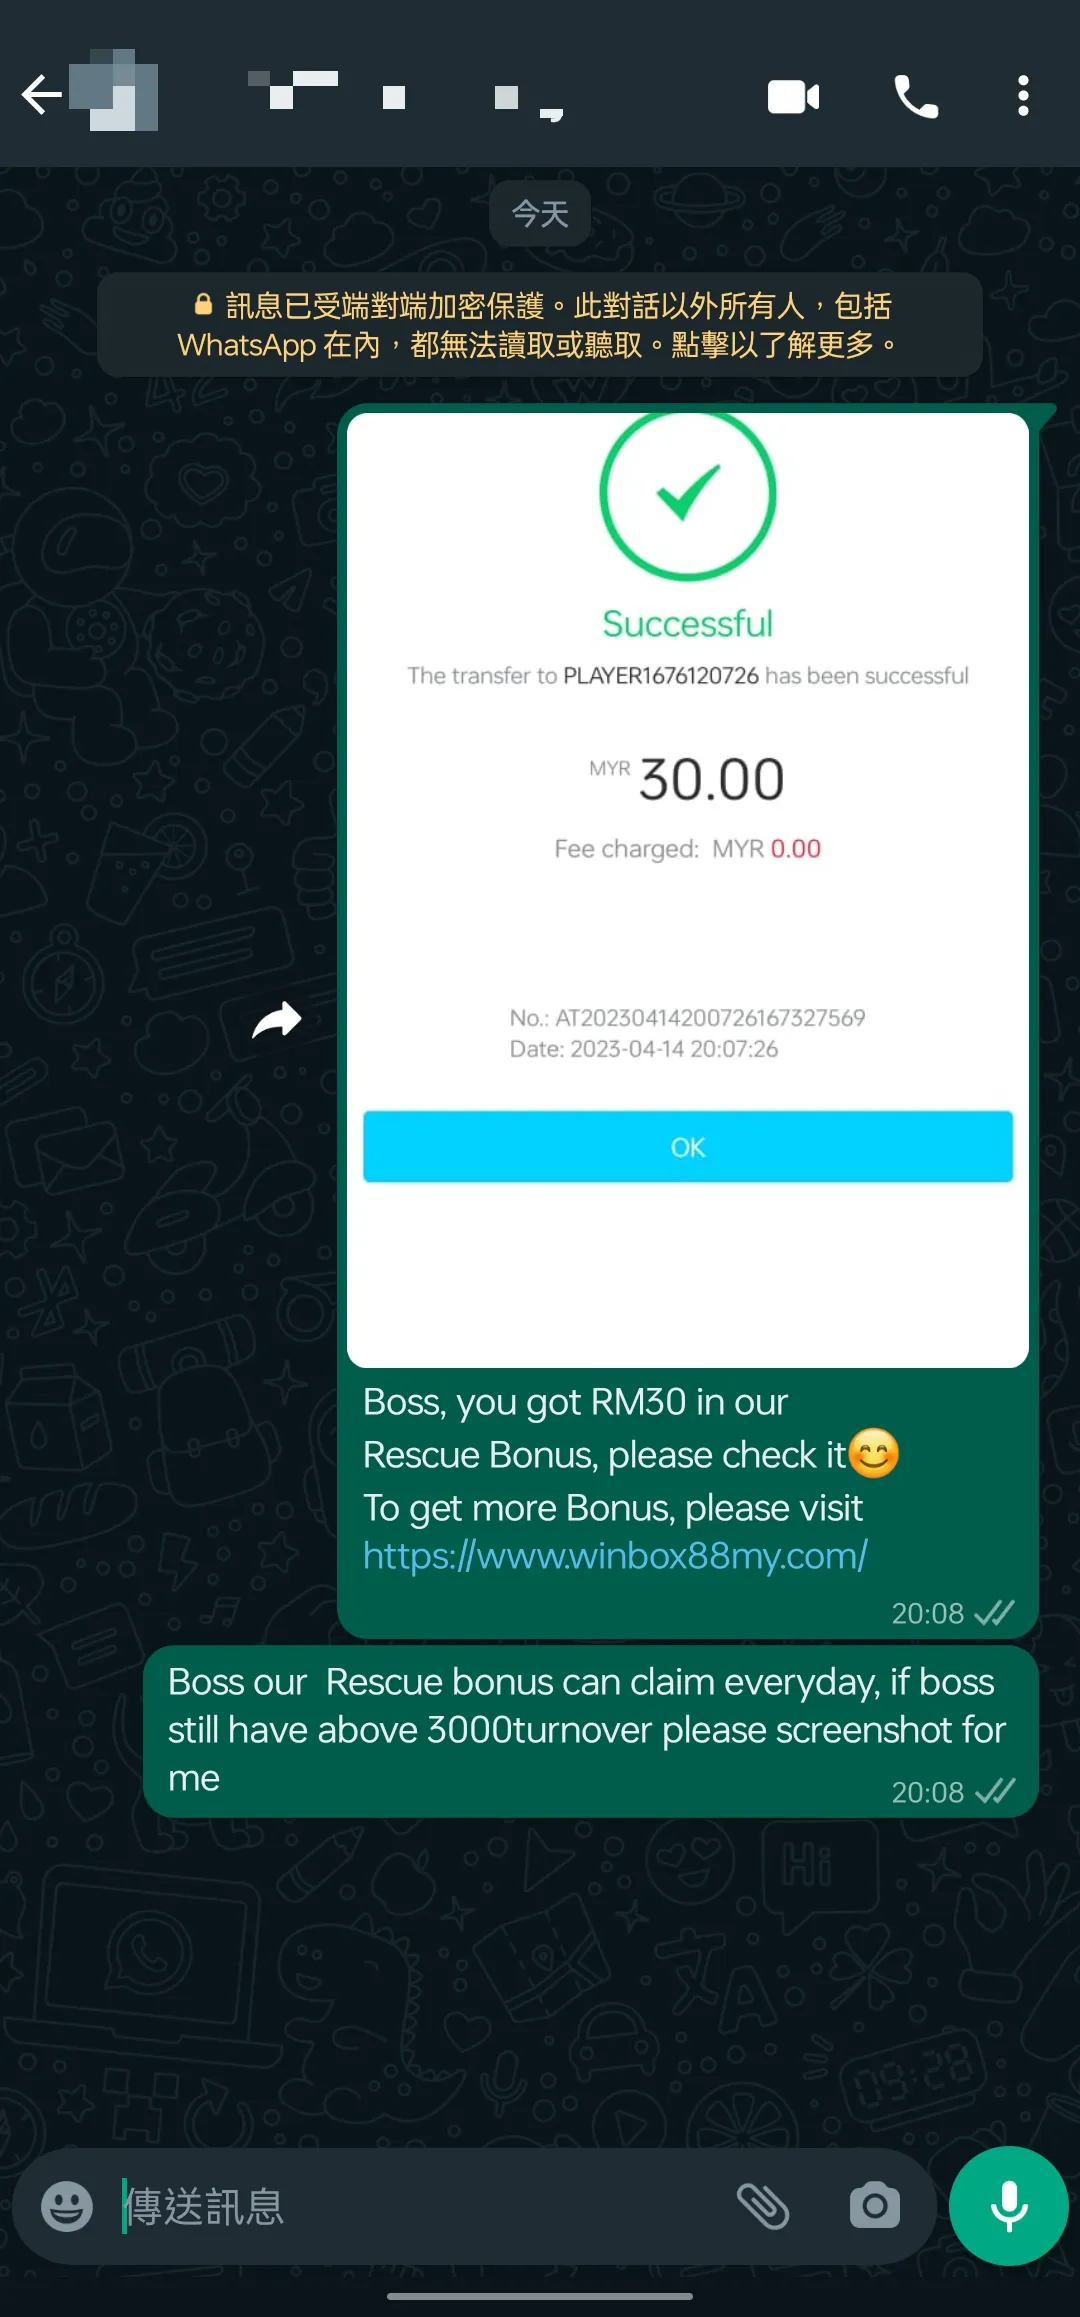 winbox rescue bonus past winner screenshot 56